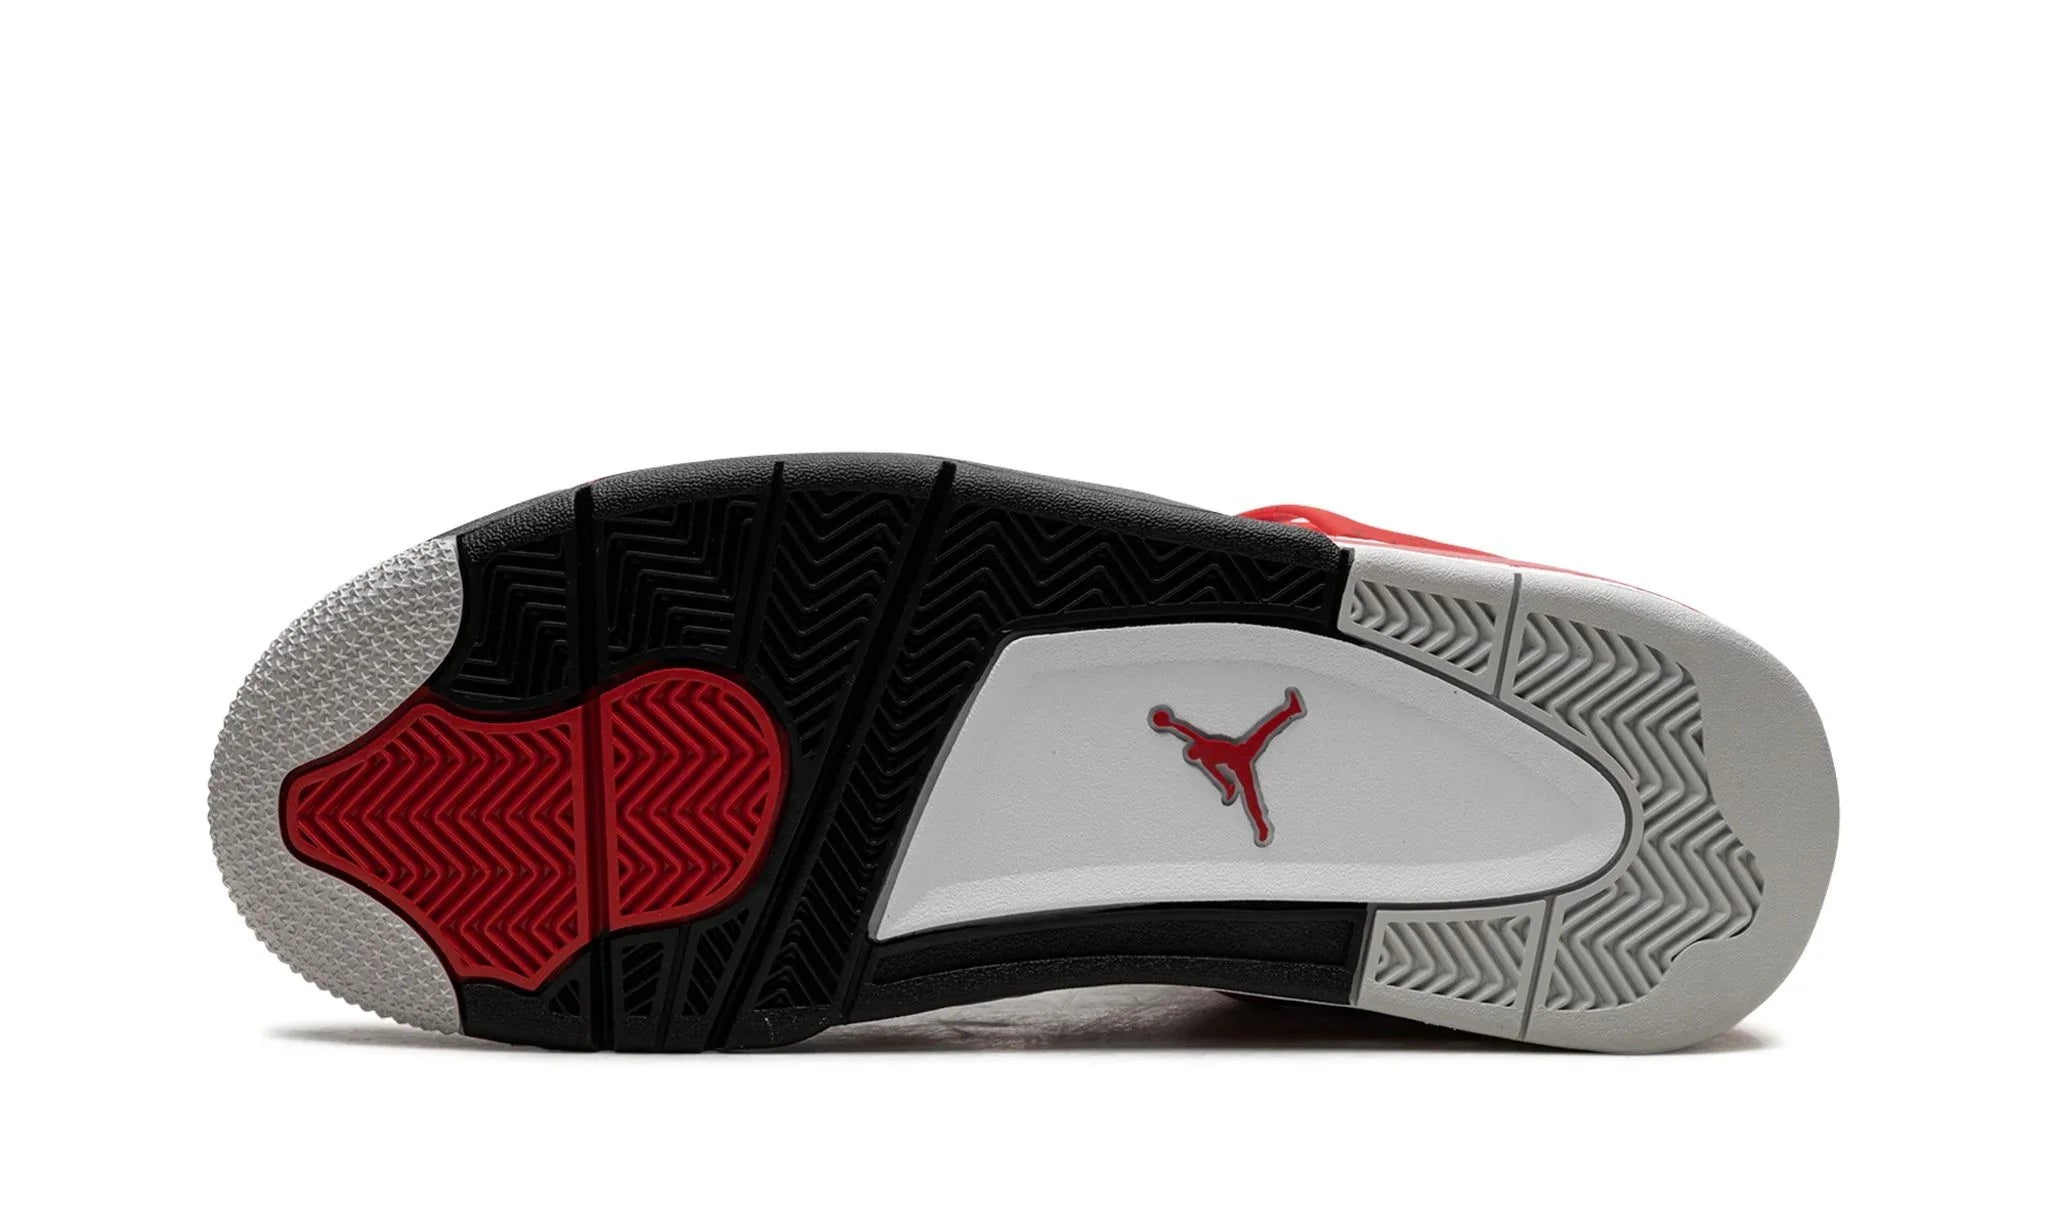 Jordan 4 Retro Red Cement - 408452-161 - Sneakers